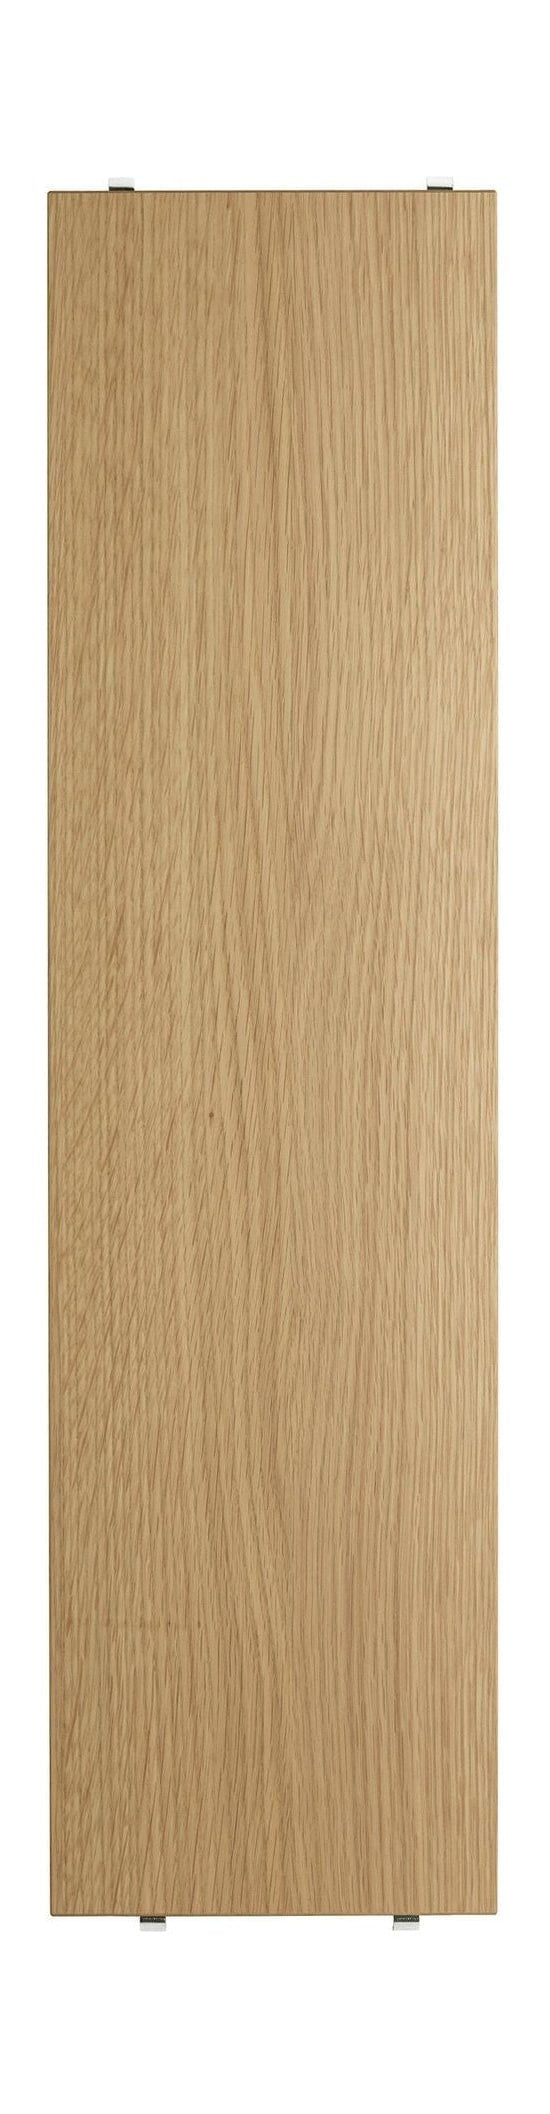 Szkiełka sznurkowa szelfowa półka wykonana z drewna dębu 20x78 cm, zestaw 3